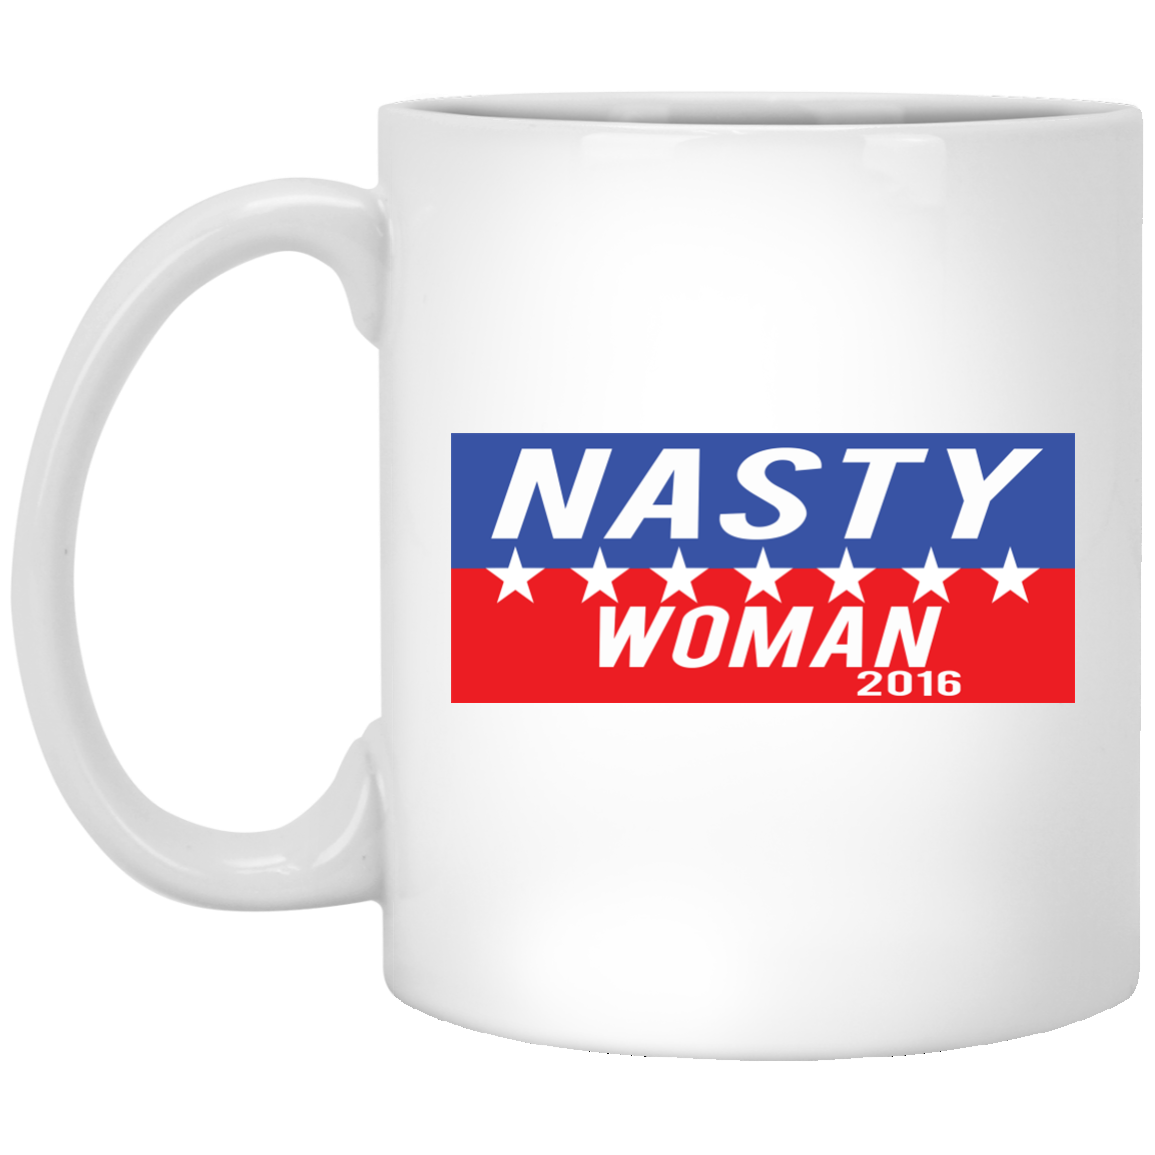 Nasty woman mug, travel mug